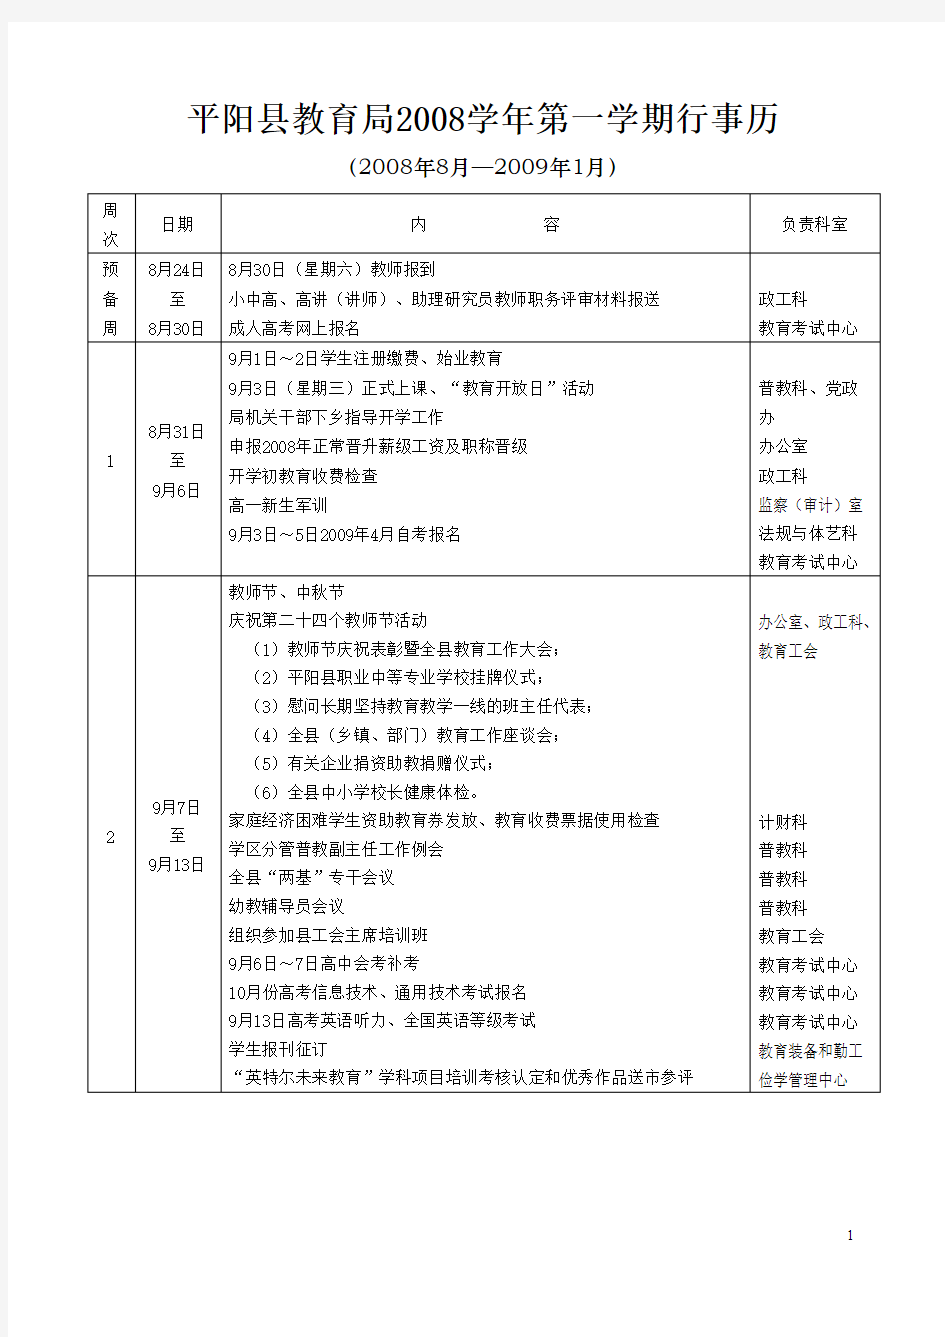 平阳县教育局第一学期行事历